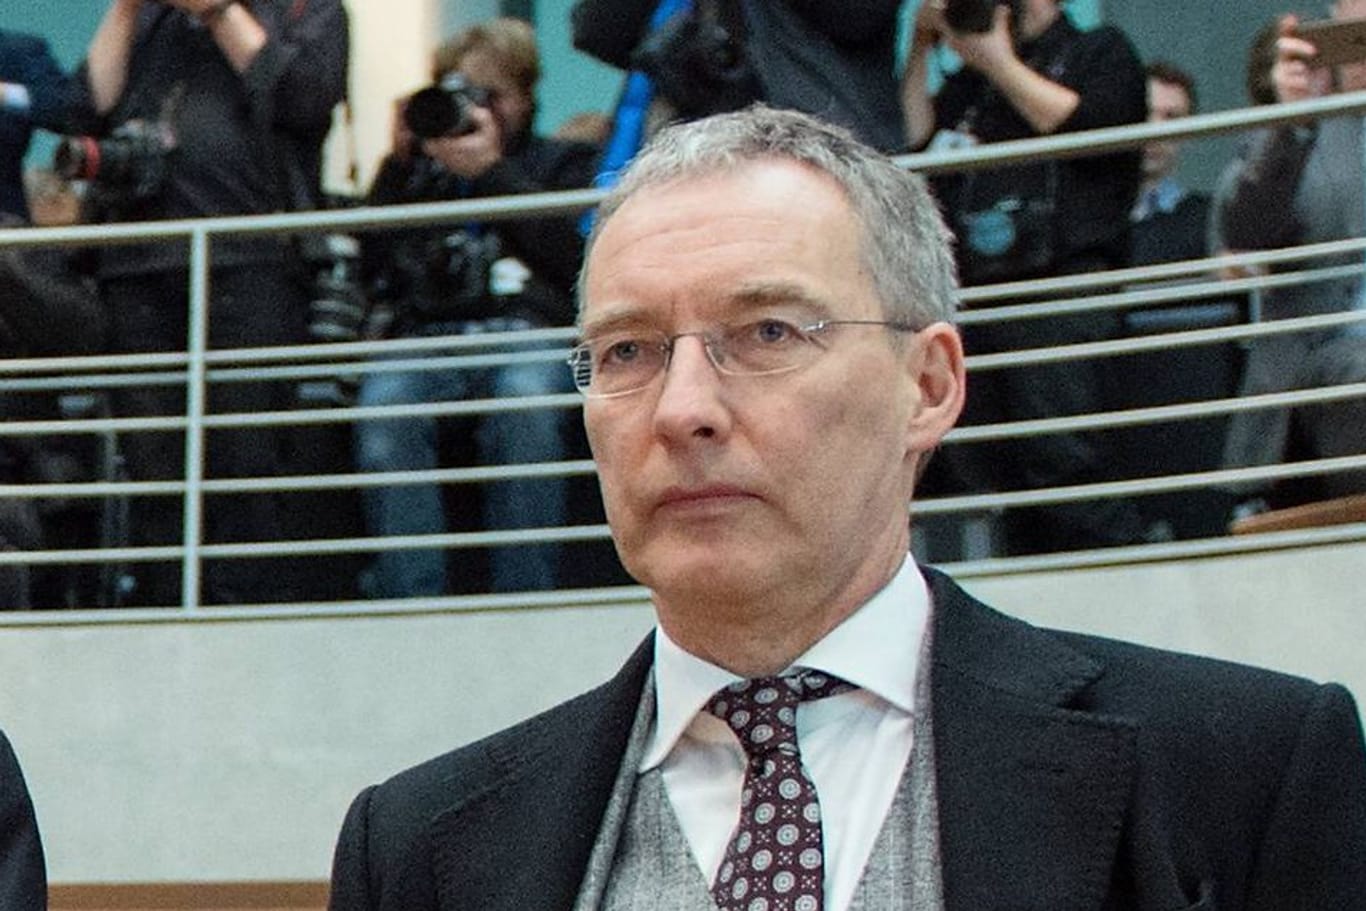 Rechtsanwalt Robert Unger bei einem Auftritt in einem Untersuchungsausschuss (Archivfoto): Er soll Hunderttausende Euro von einer kremlnahen Stiftung bekommen haben.